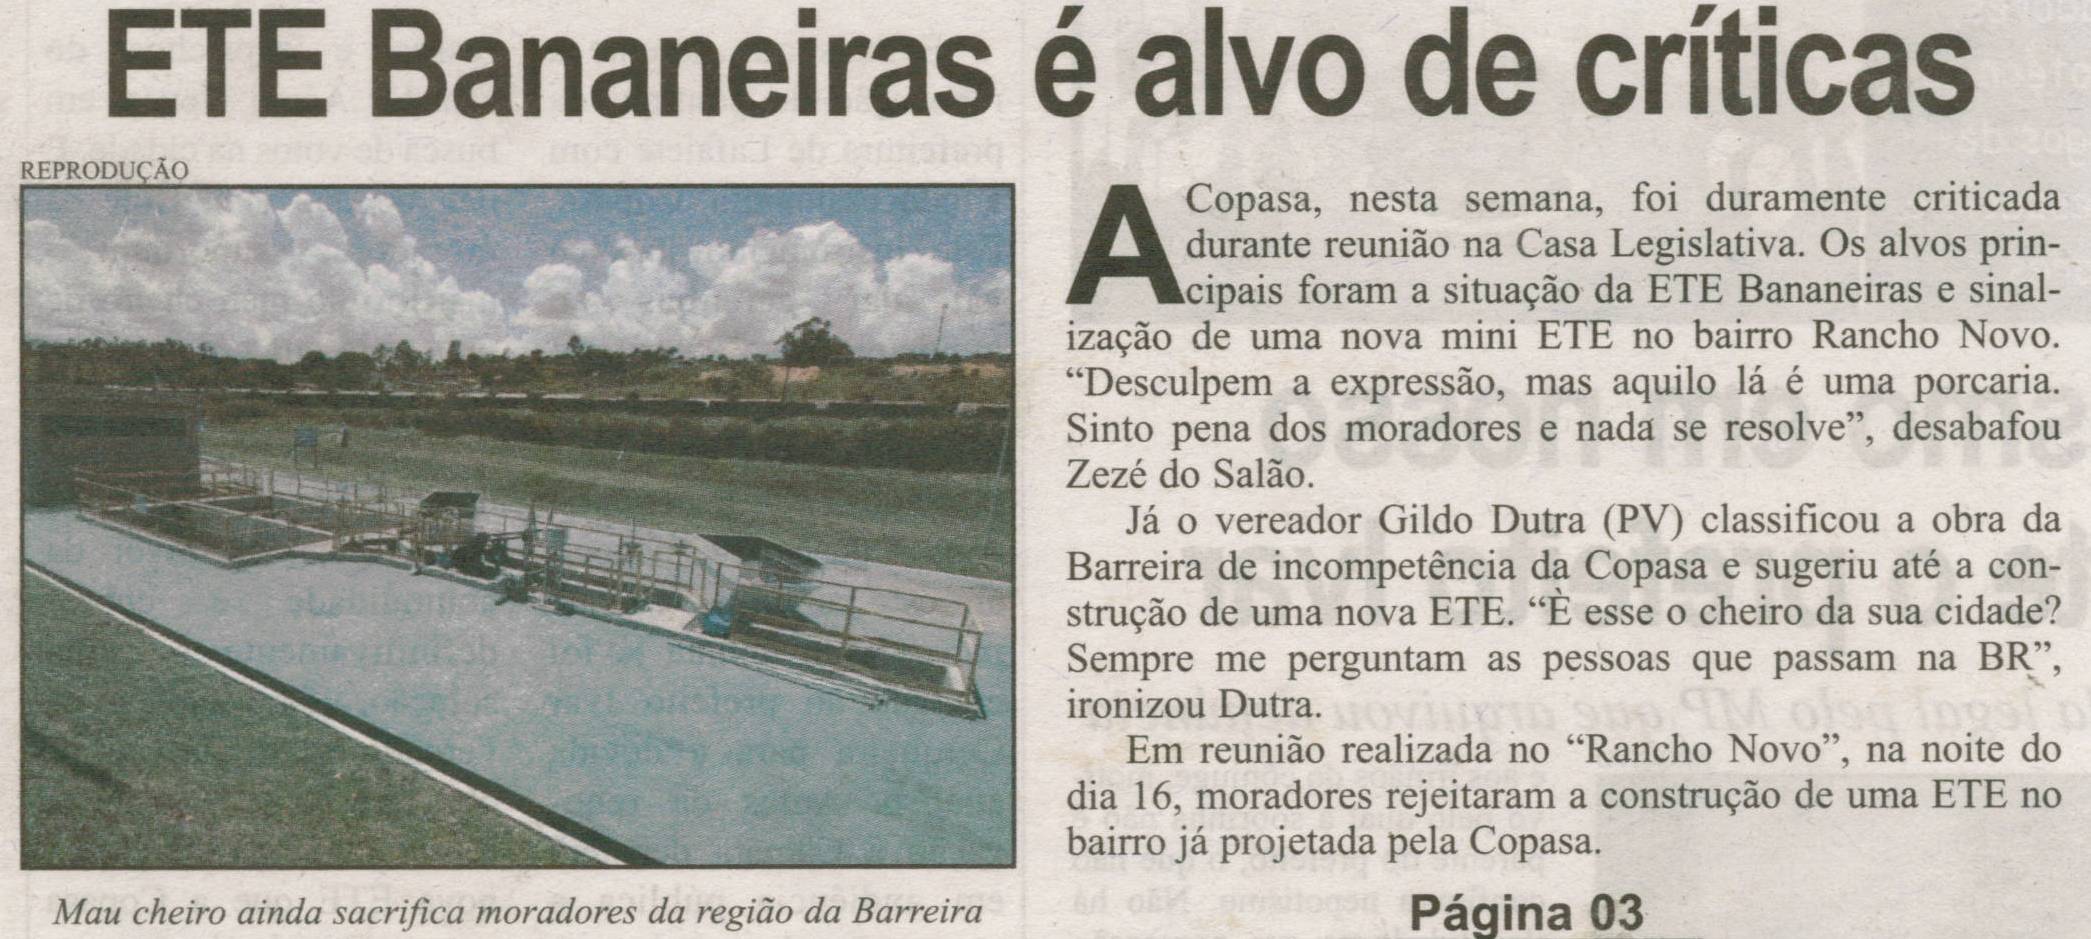 ETE Bananeiras é alvo de críticas. Correio de Minas, Conselheiro Lafaiete, 24 ago. 2013, p. 01.